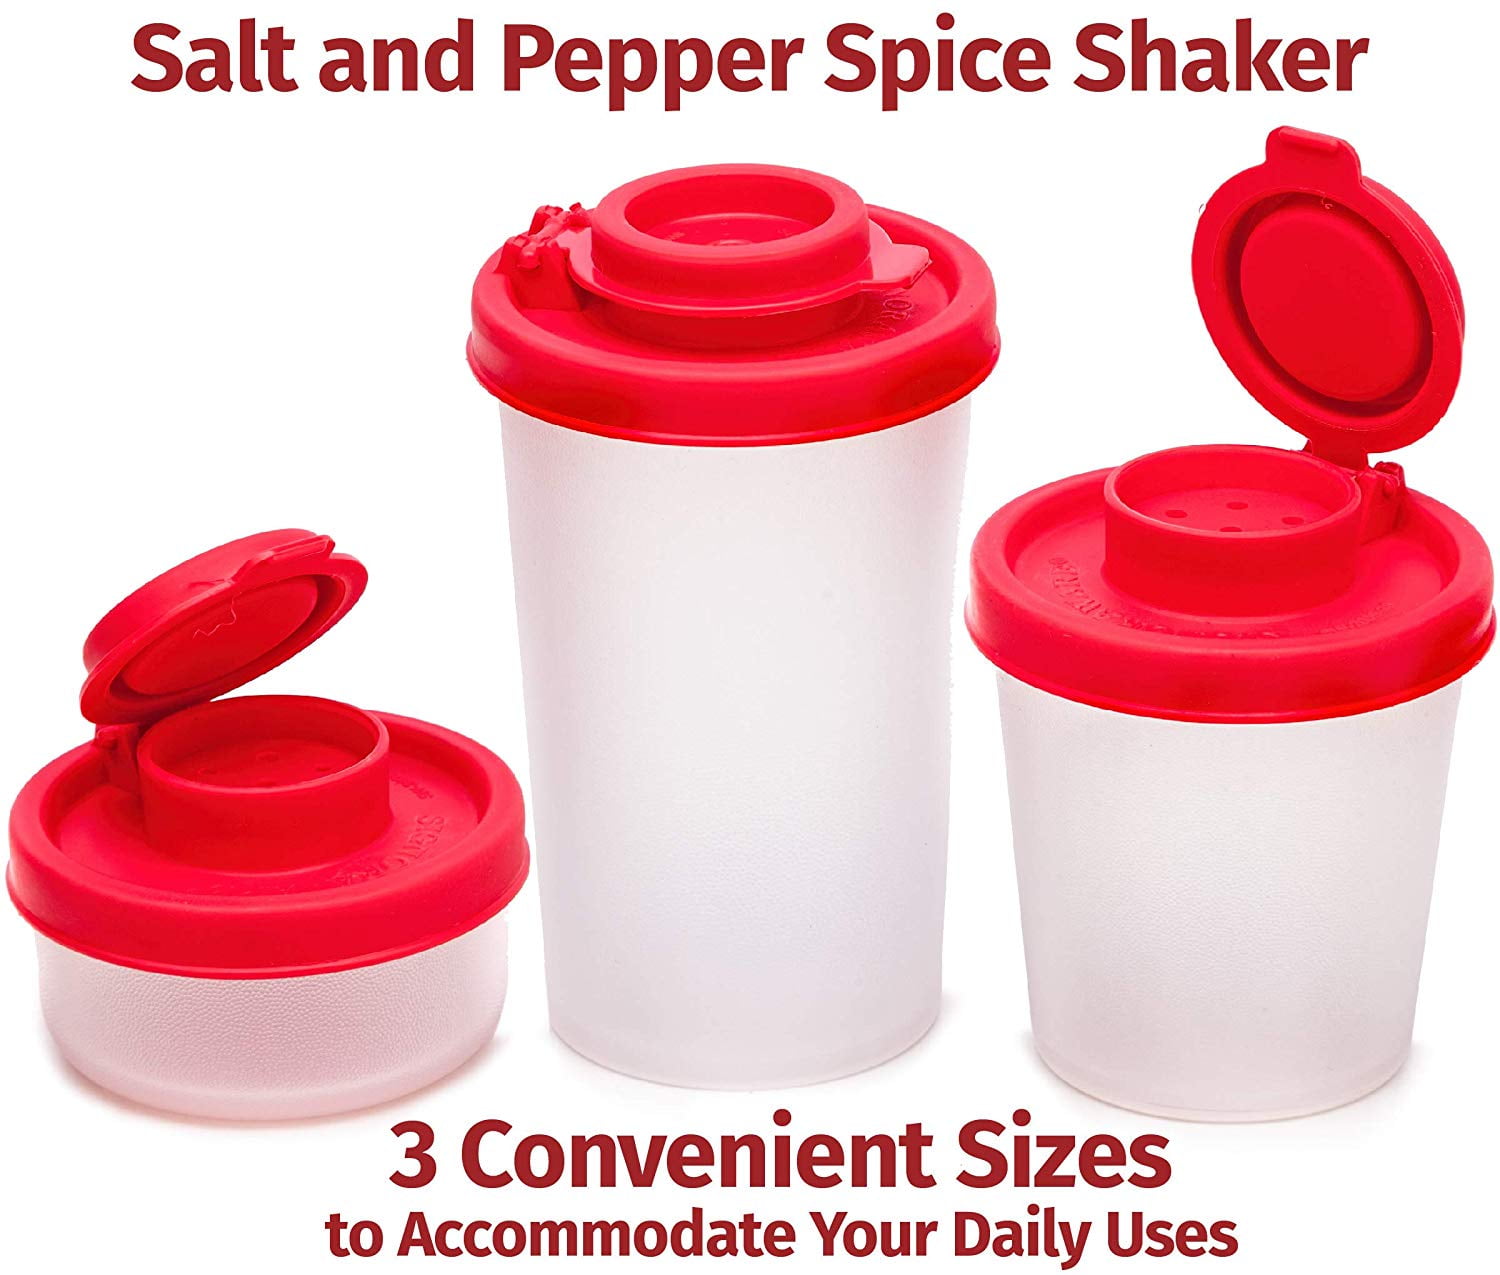 Pepper shaker sized dick